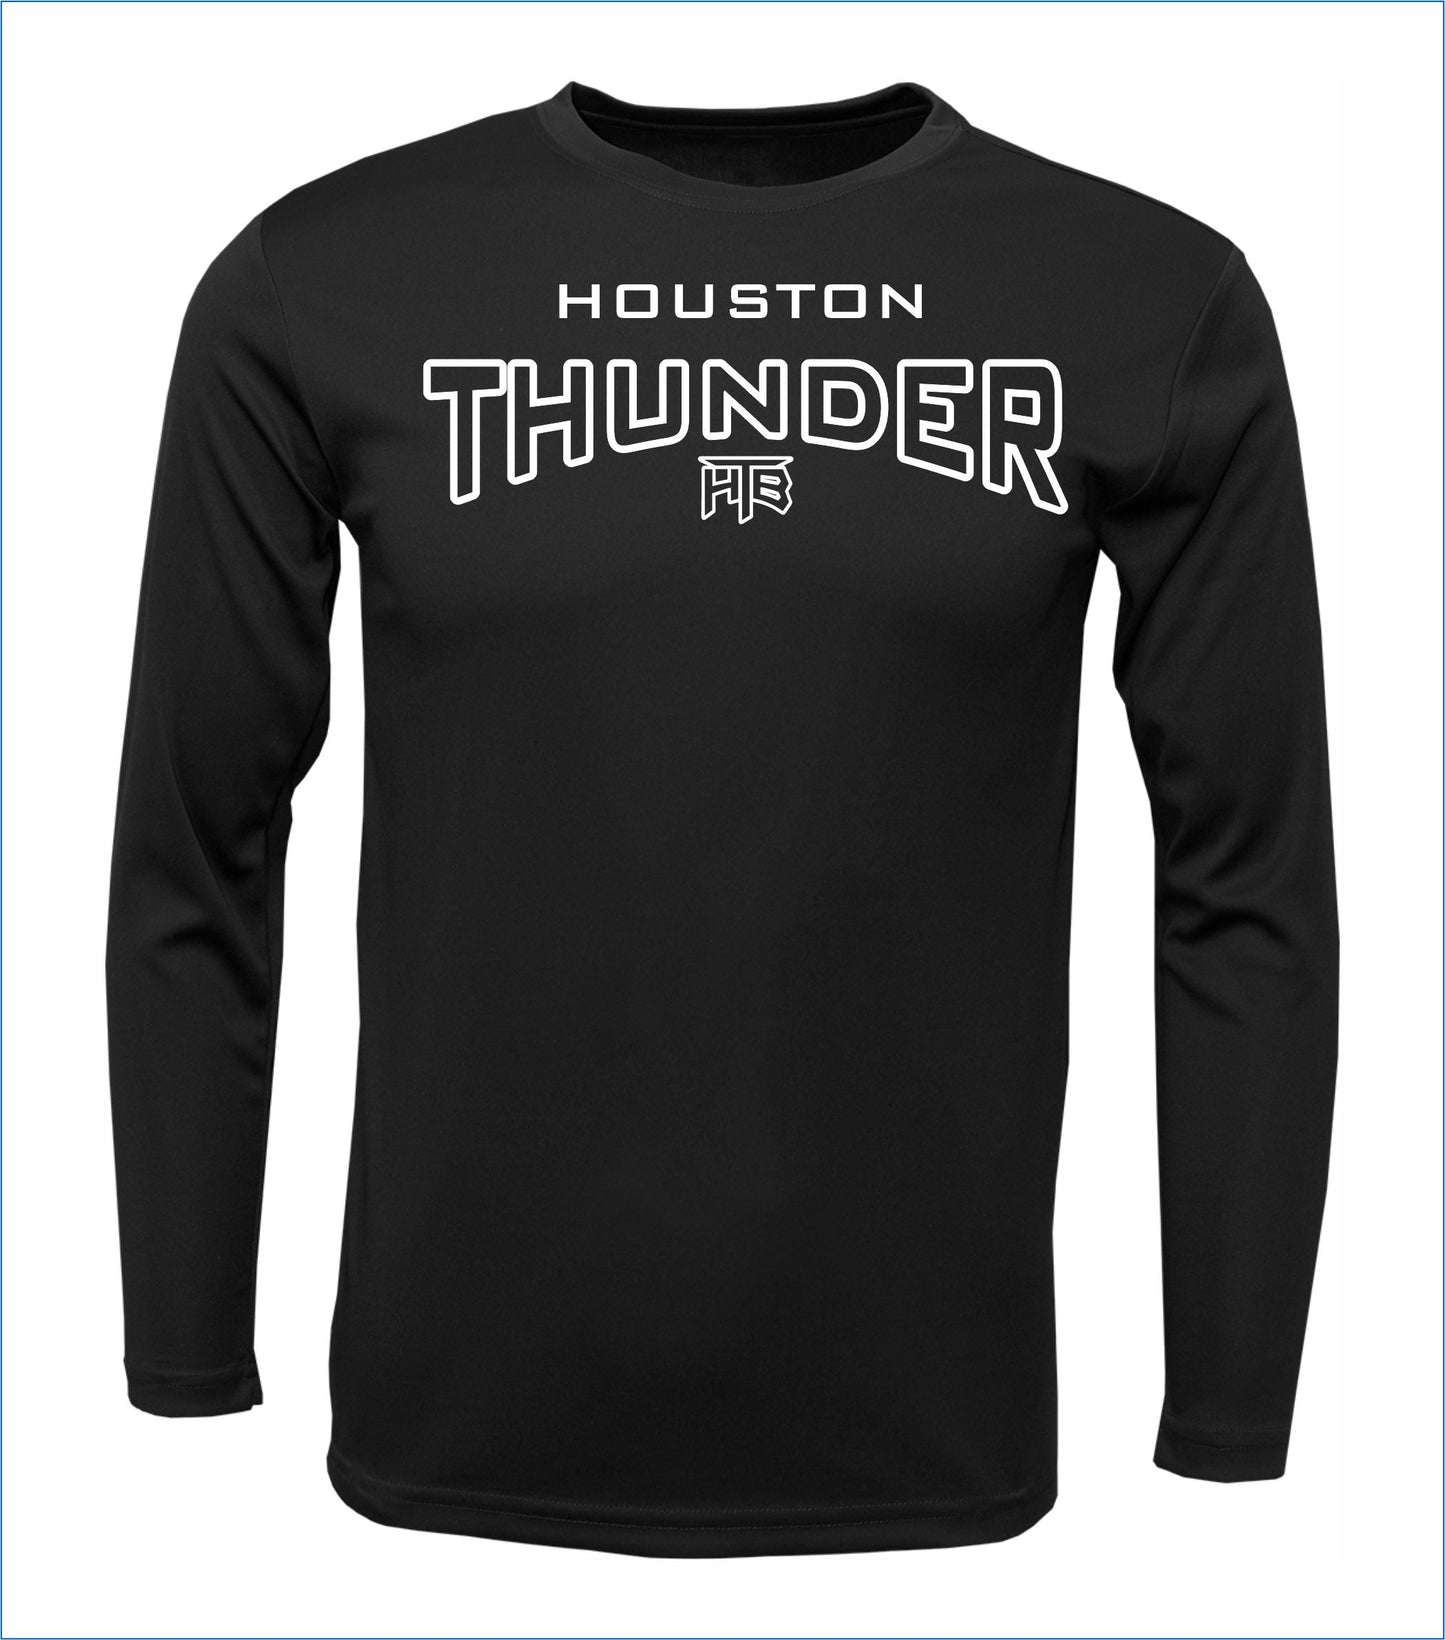 Houston Thunder Arched Long Sleeve Cotton Shirt